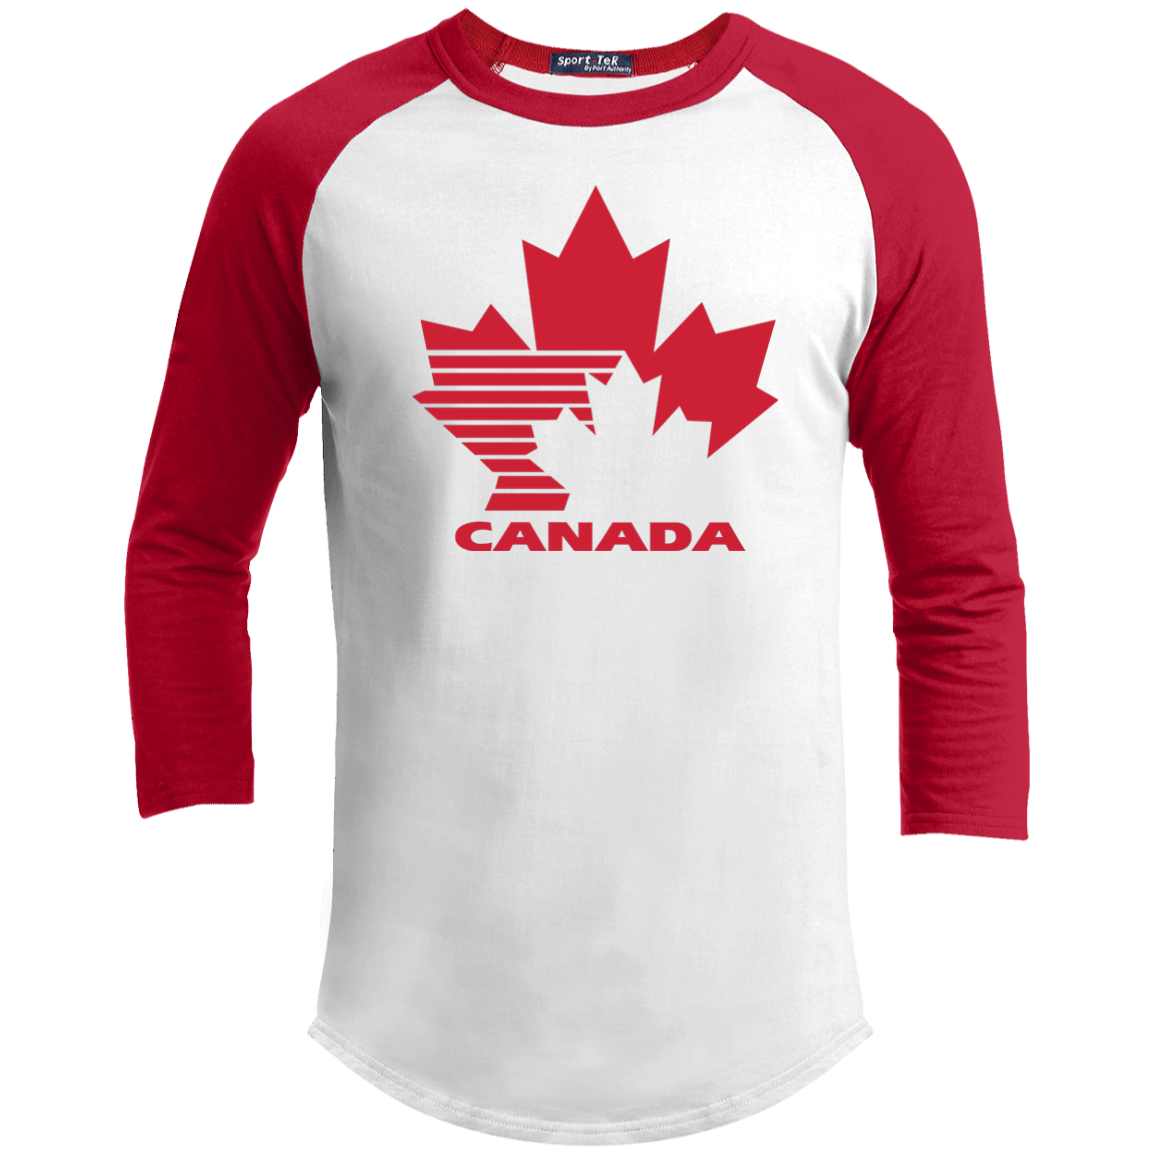 Логотип джерси хоккейная. Канада хоккей логотип. Sport-Tek. Джерси Канада.